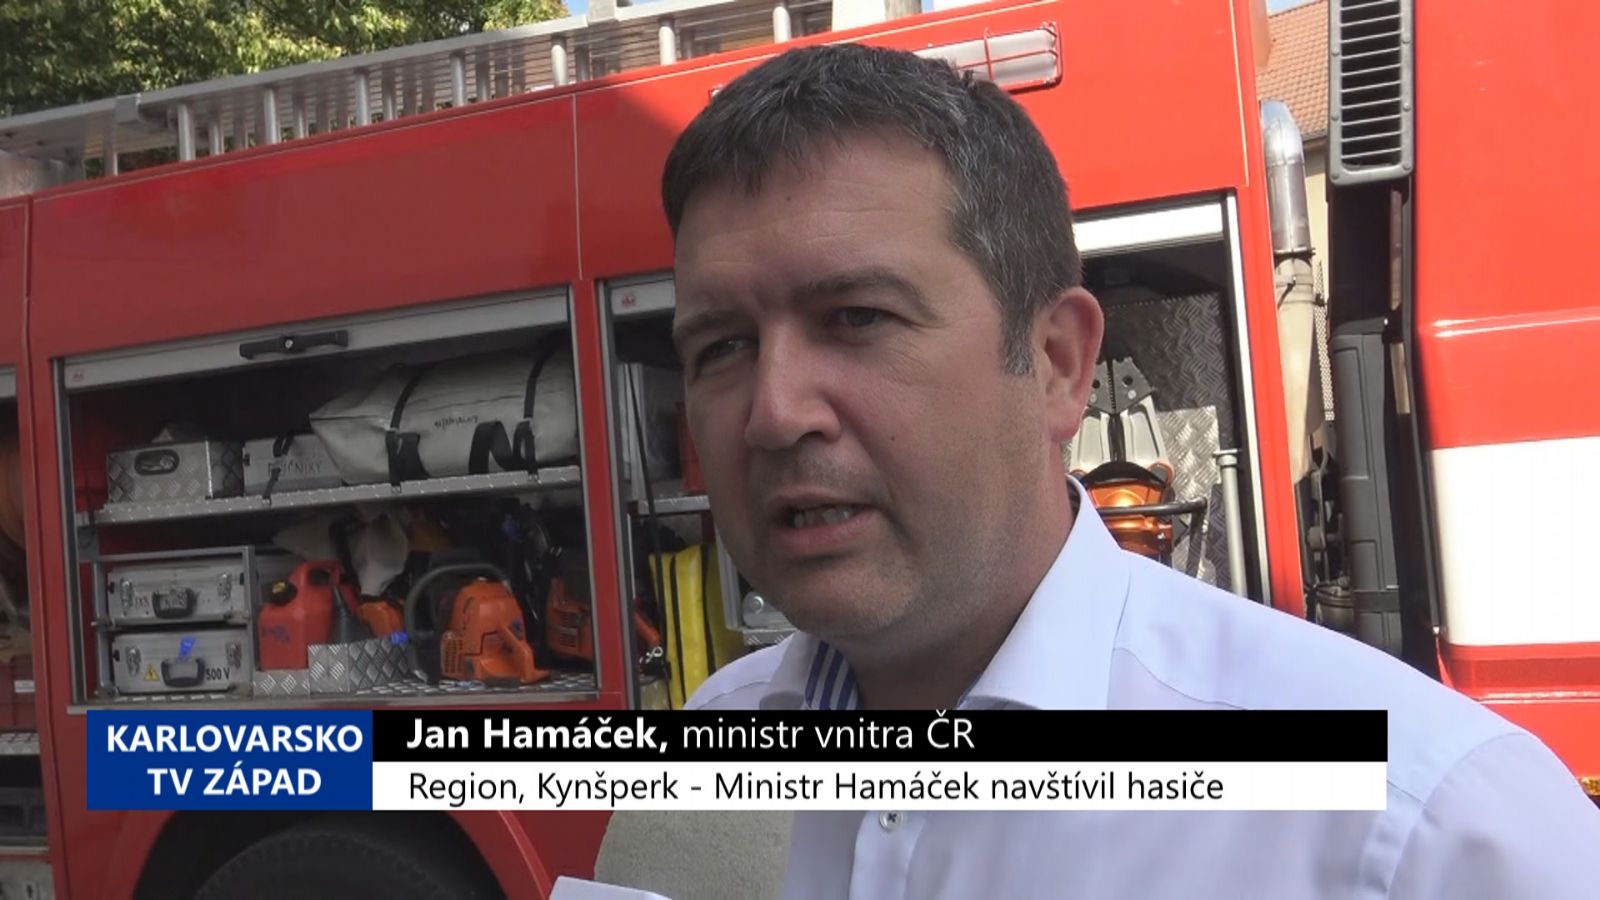 Region, Kynšperk: Ministr Hamáček navštívil hasiče (TV Západ)